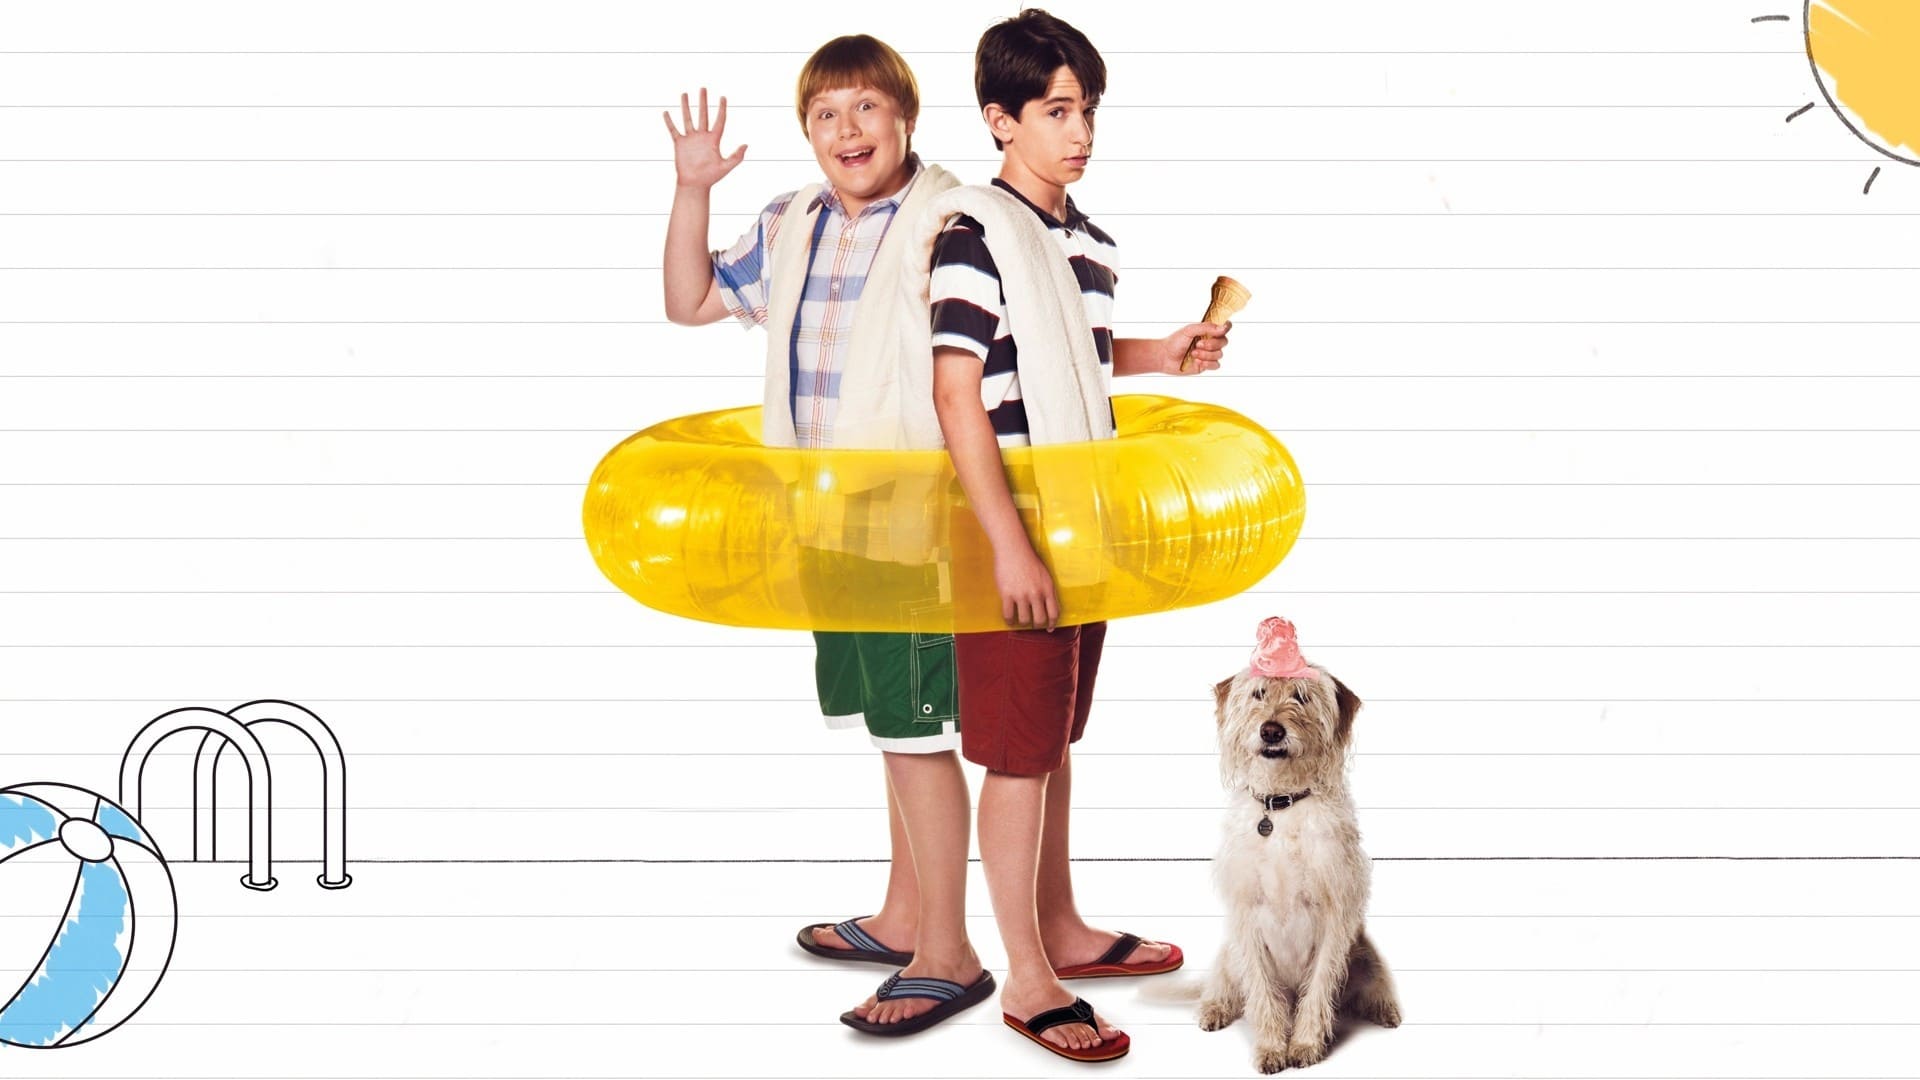 Poster Phim Nhật Ký Cậu Bé Nhút Nhát: Những Ngày Hè Oi Bức (Diary of a Wimpy Kid: Dog Days)